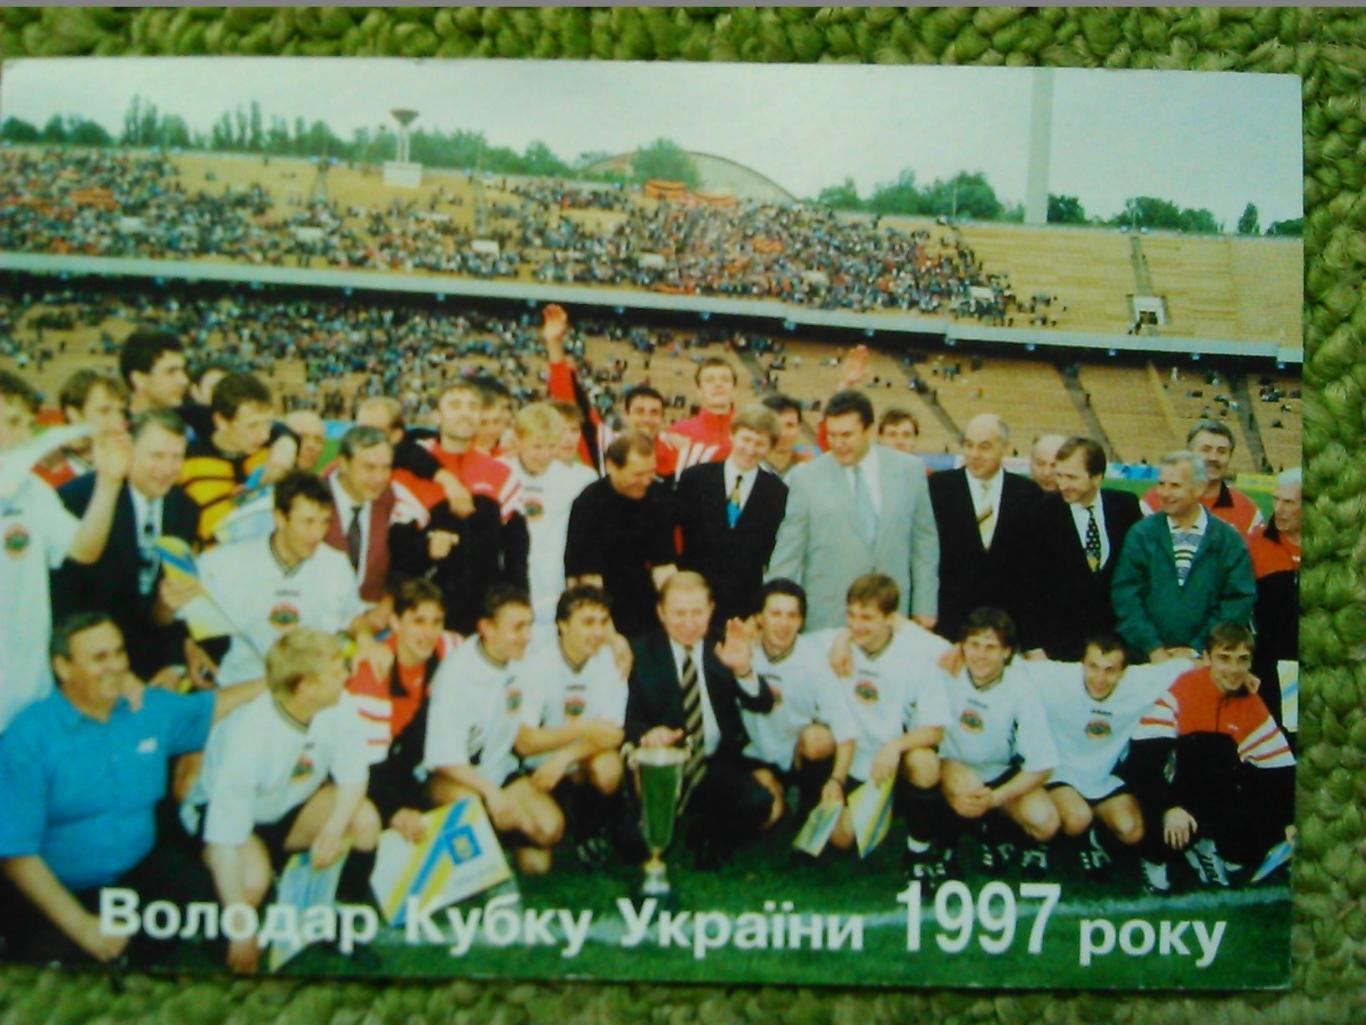 ШАХТАР Донецьк володар Кубку України 1997. календарик 1998. Оптом скидки до 45%